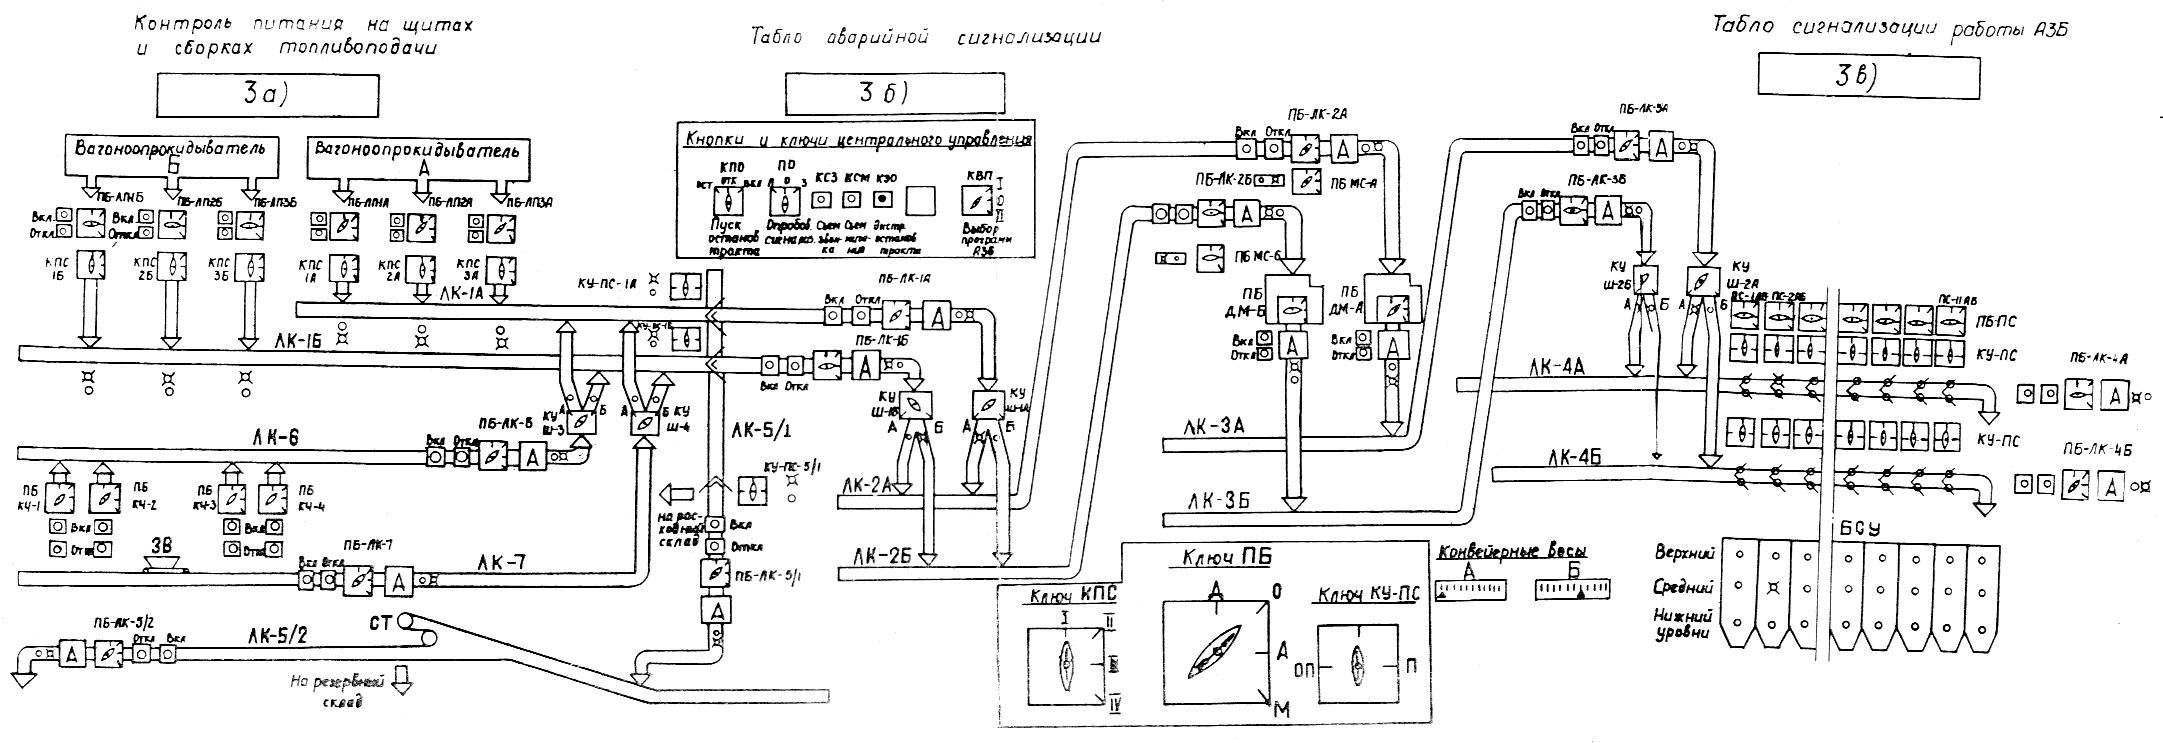 Схема принципиальная железоотделителя